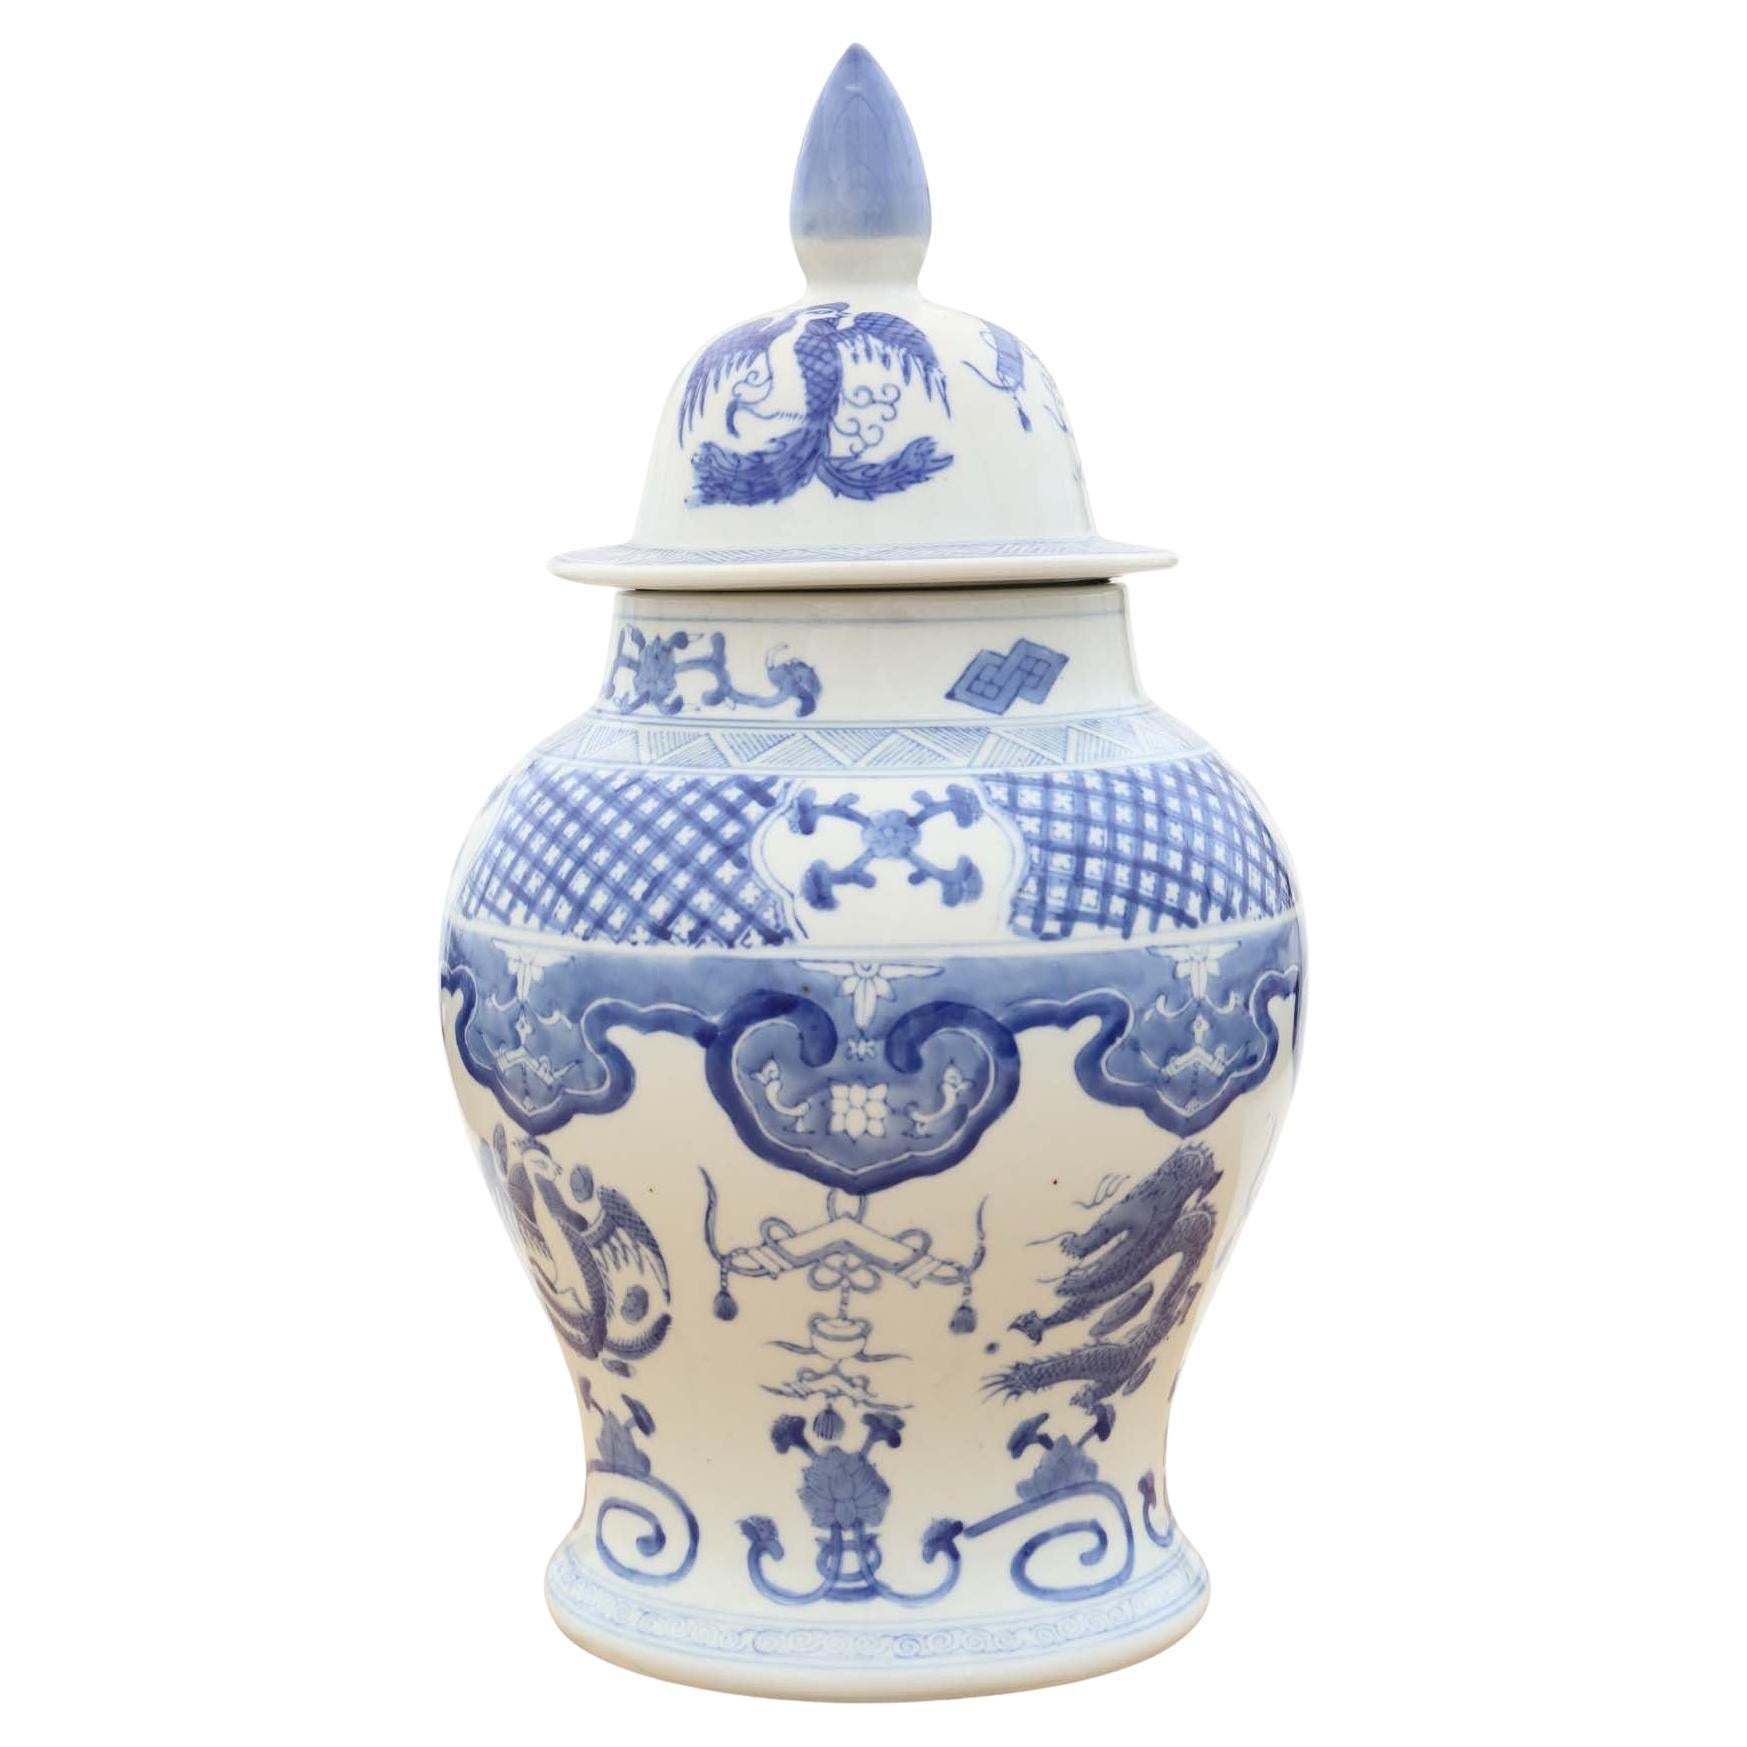 Jarre à gingembre ancienne en céramique chinoise orientale bleue et blanche avec couvercle